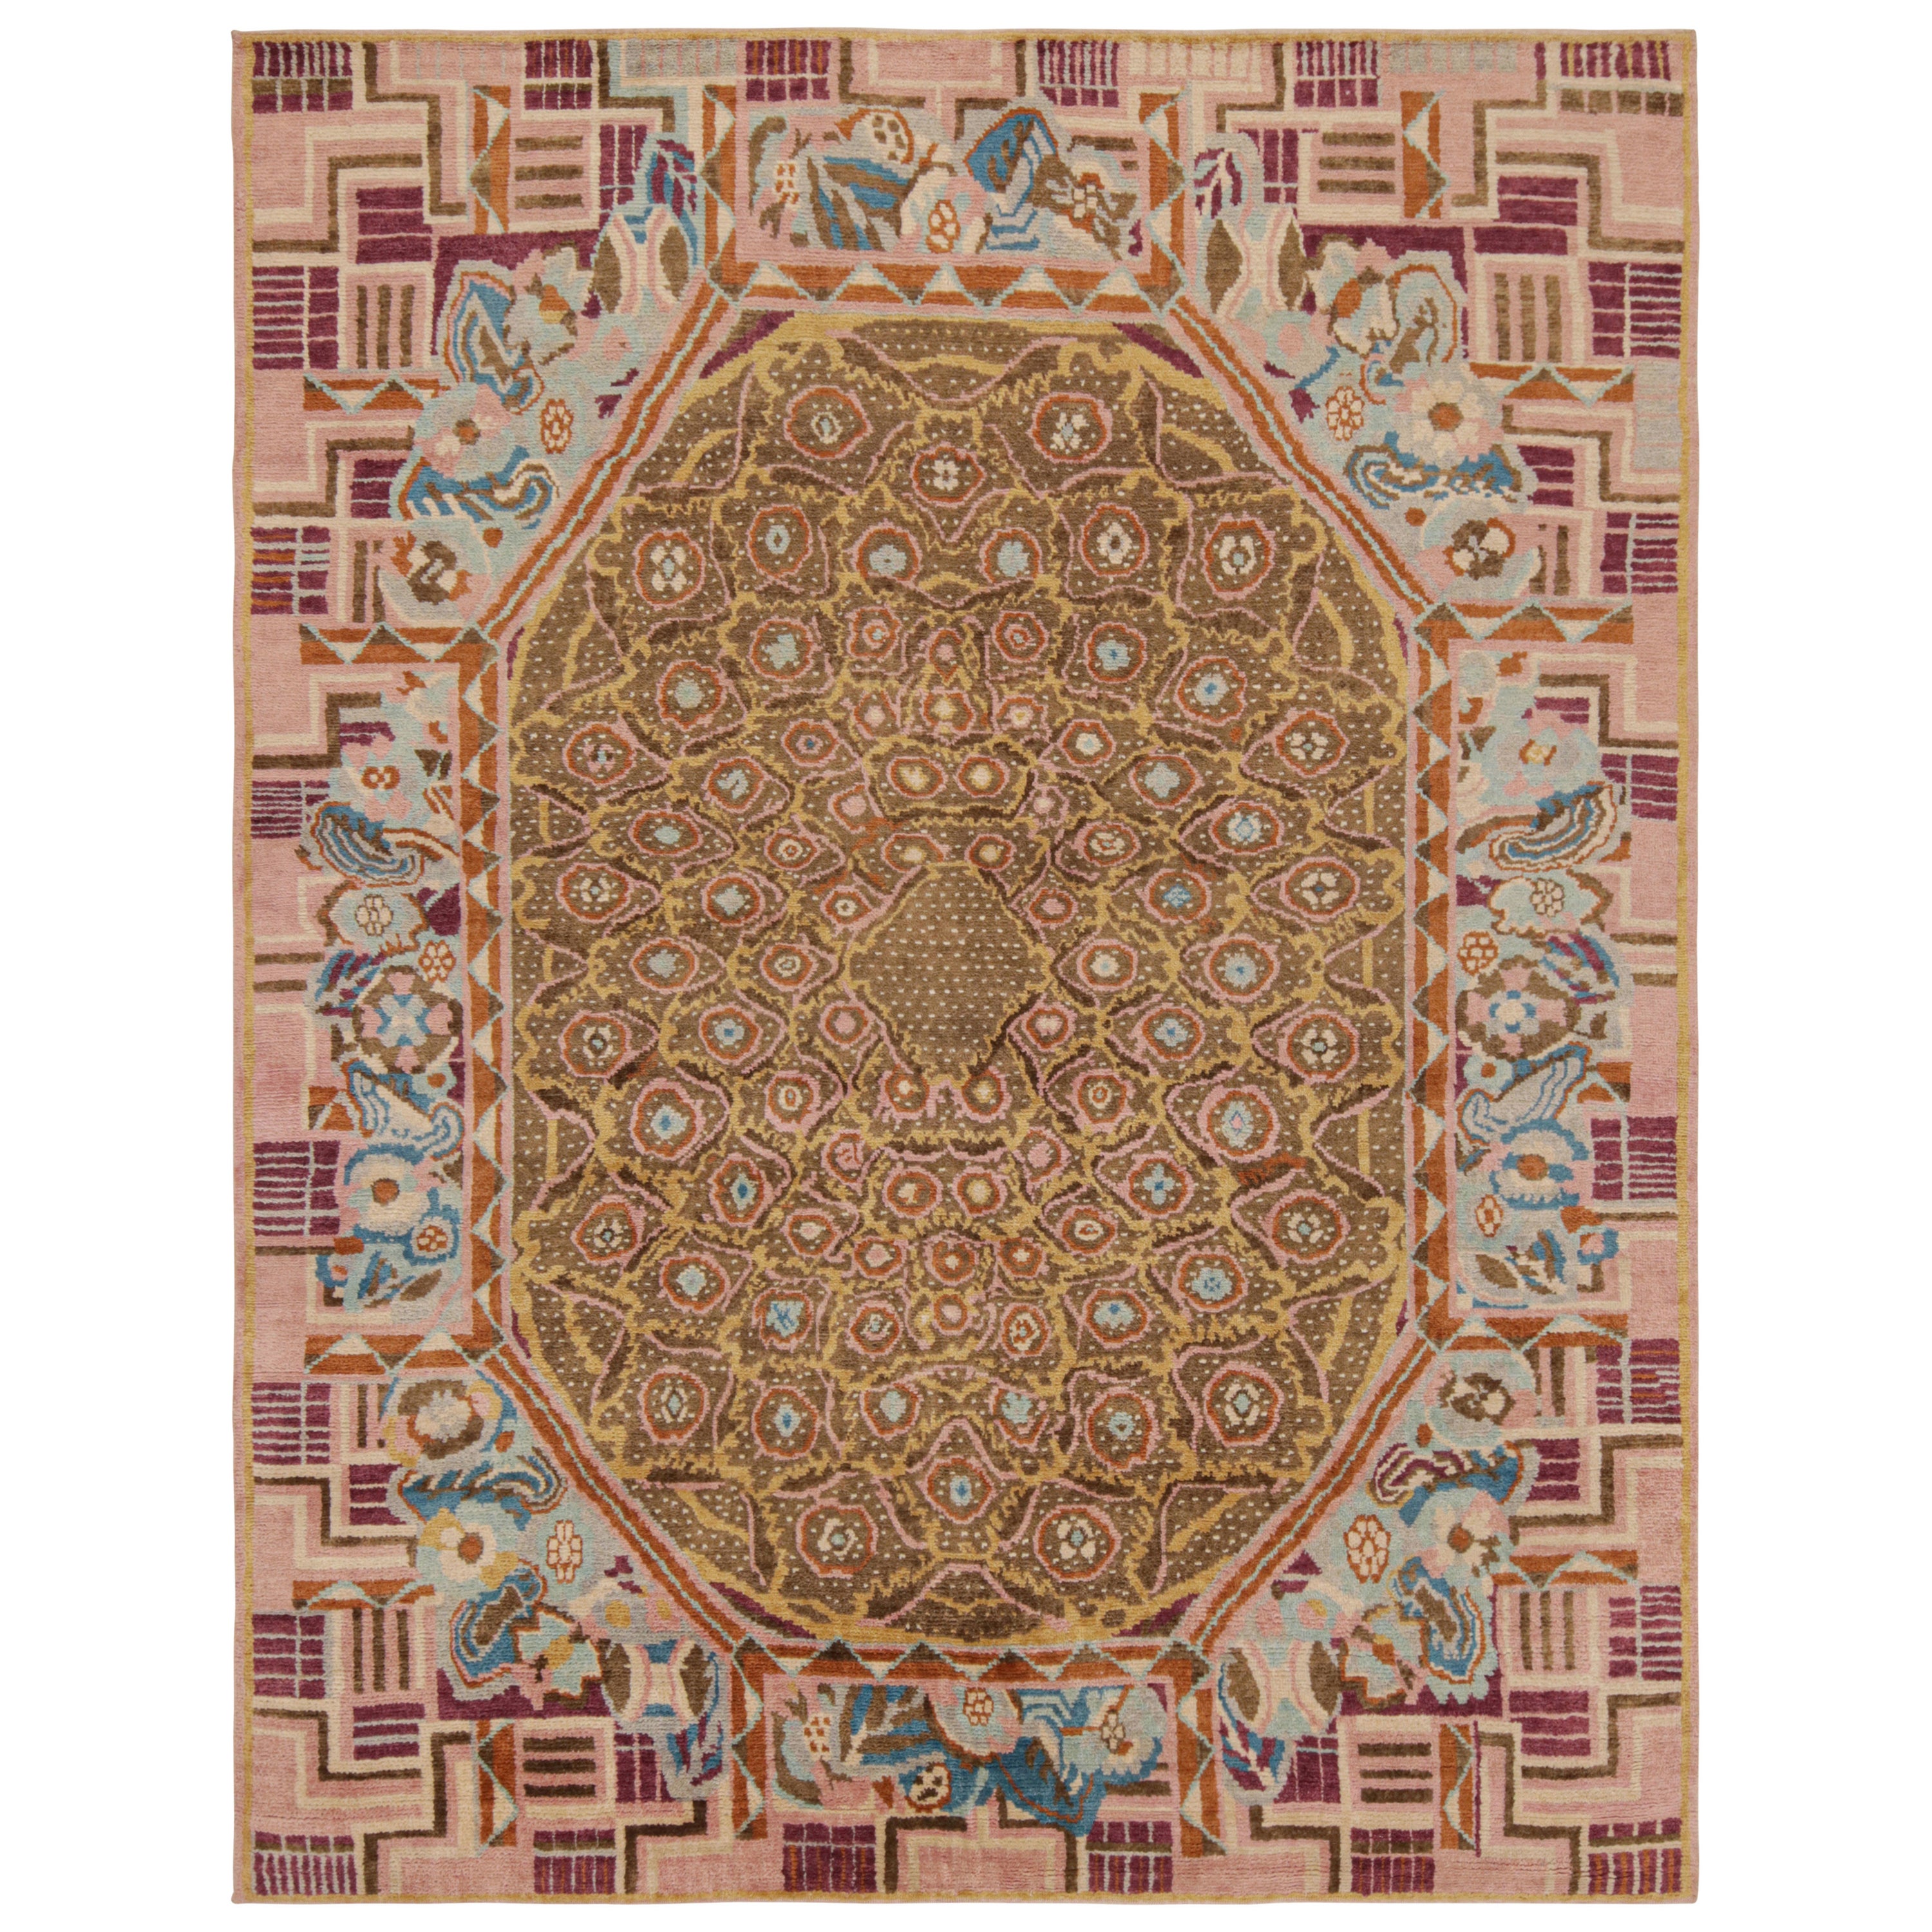 Rug & Kilim's französischer Art-Deco-Teppich mit polychromen geometrischen Mustern